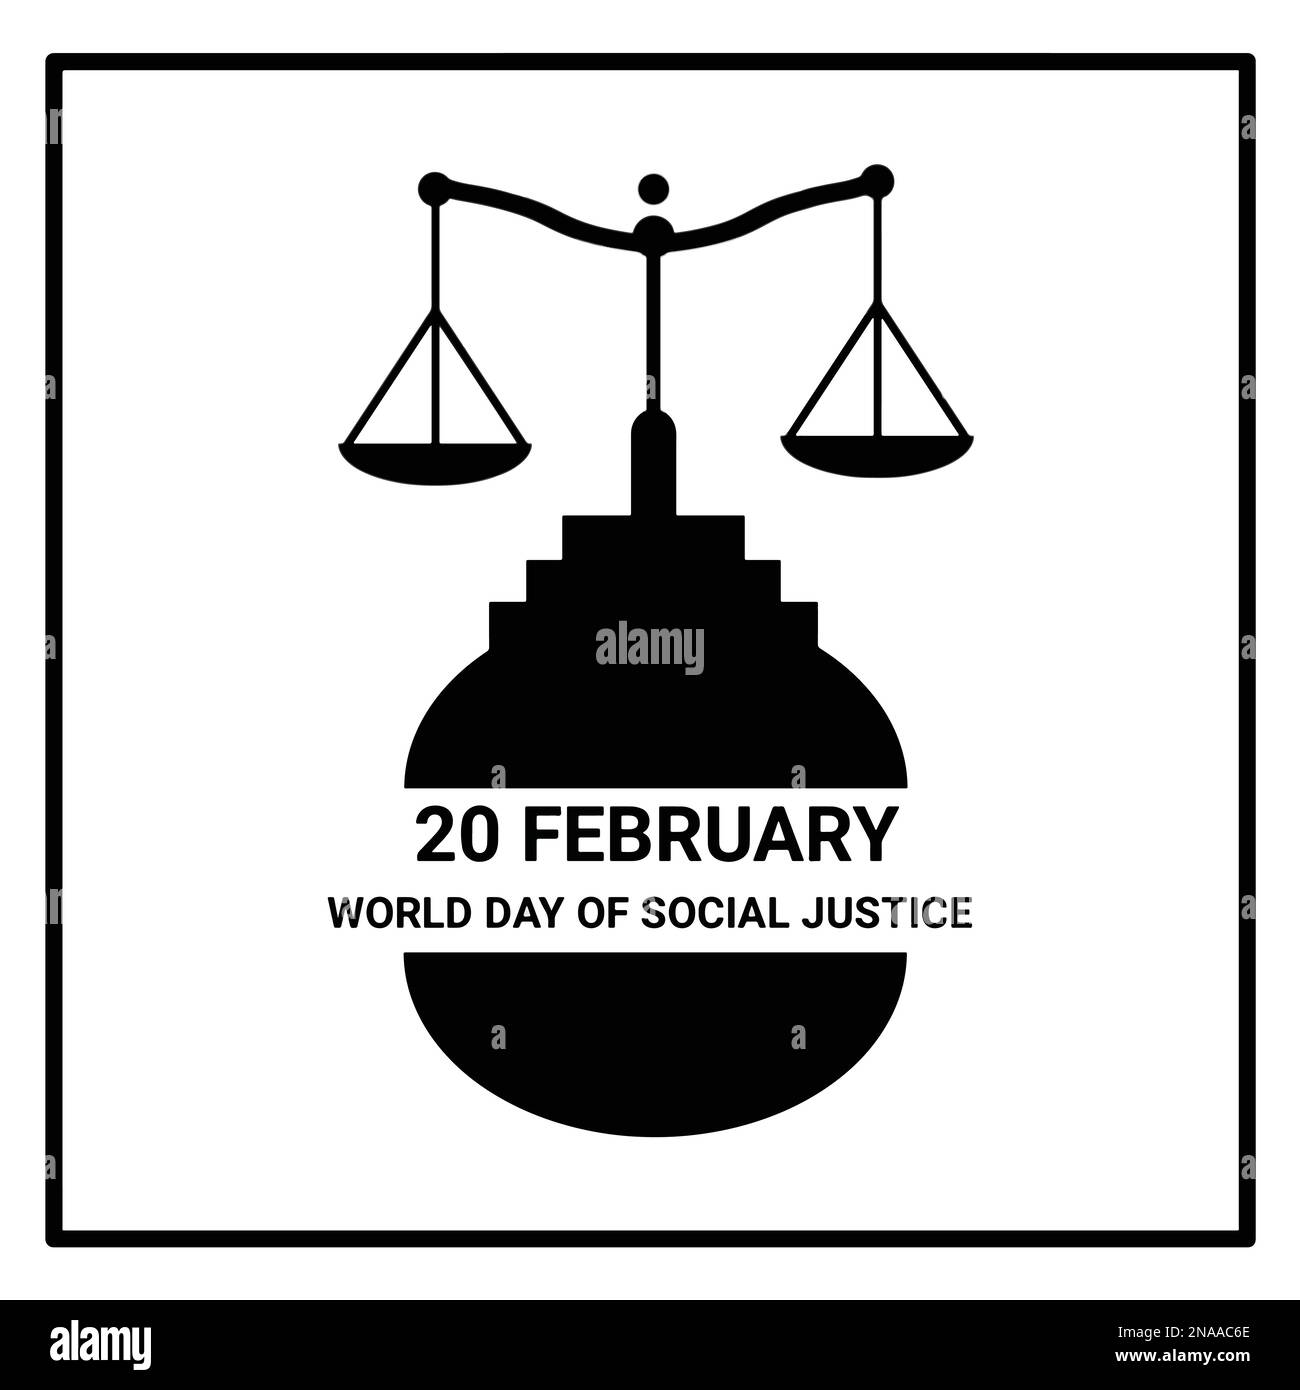 Affiche blanche de la Journée mondiale de la justice sociale avec une image réaliste de la date février 20 Illustration vectorielle Illustration de Vecteur